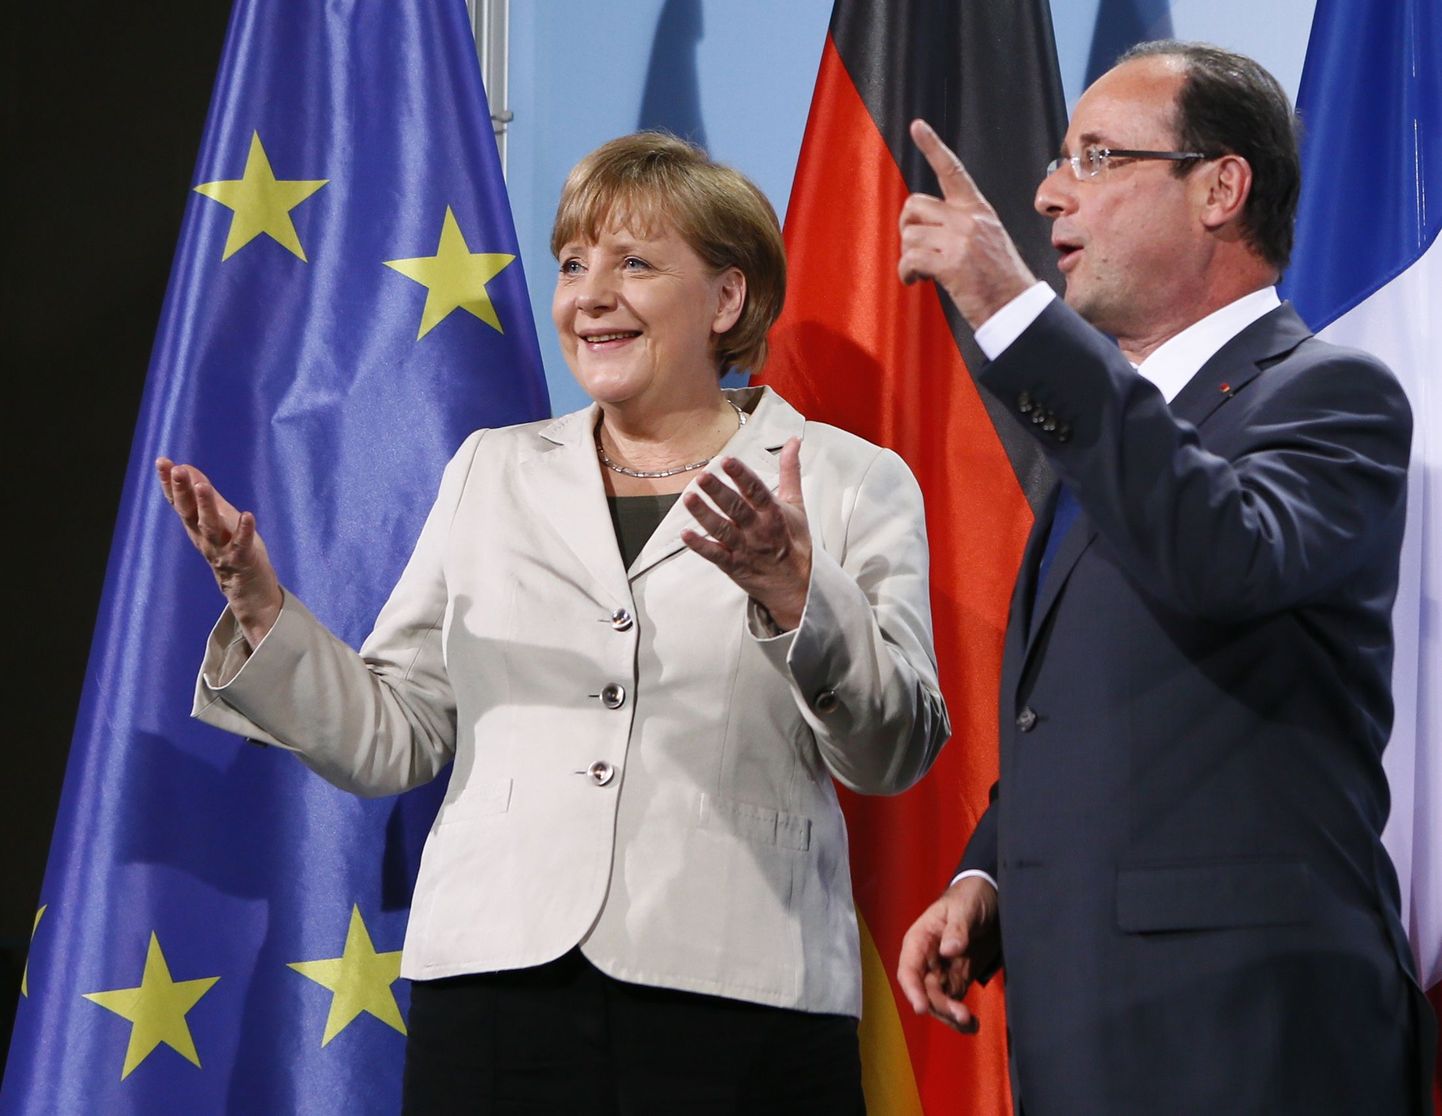 Saksamaa kantsler Angela Merkel ja Prantsusmaa president Francois Hollande pressikonverentsil Berliinis 15. mail pärast nende esimest kohtumist.